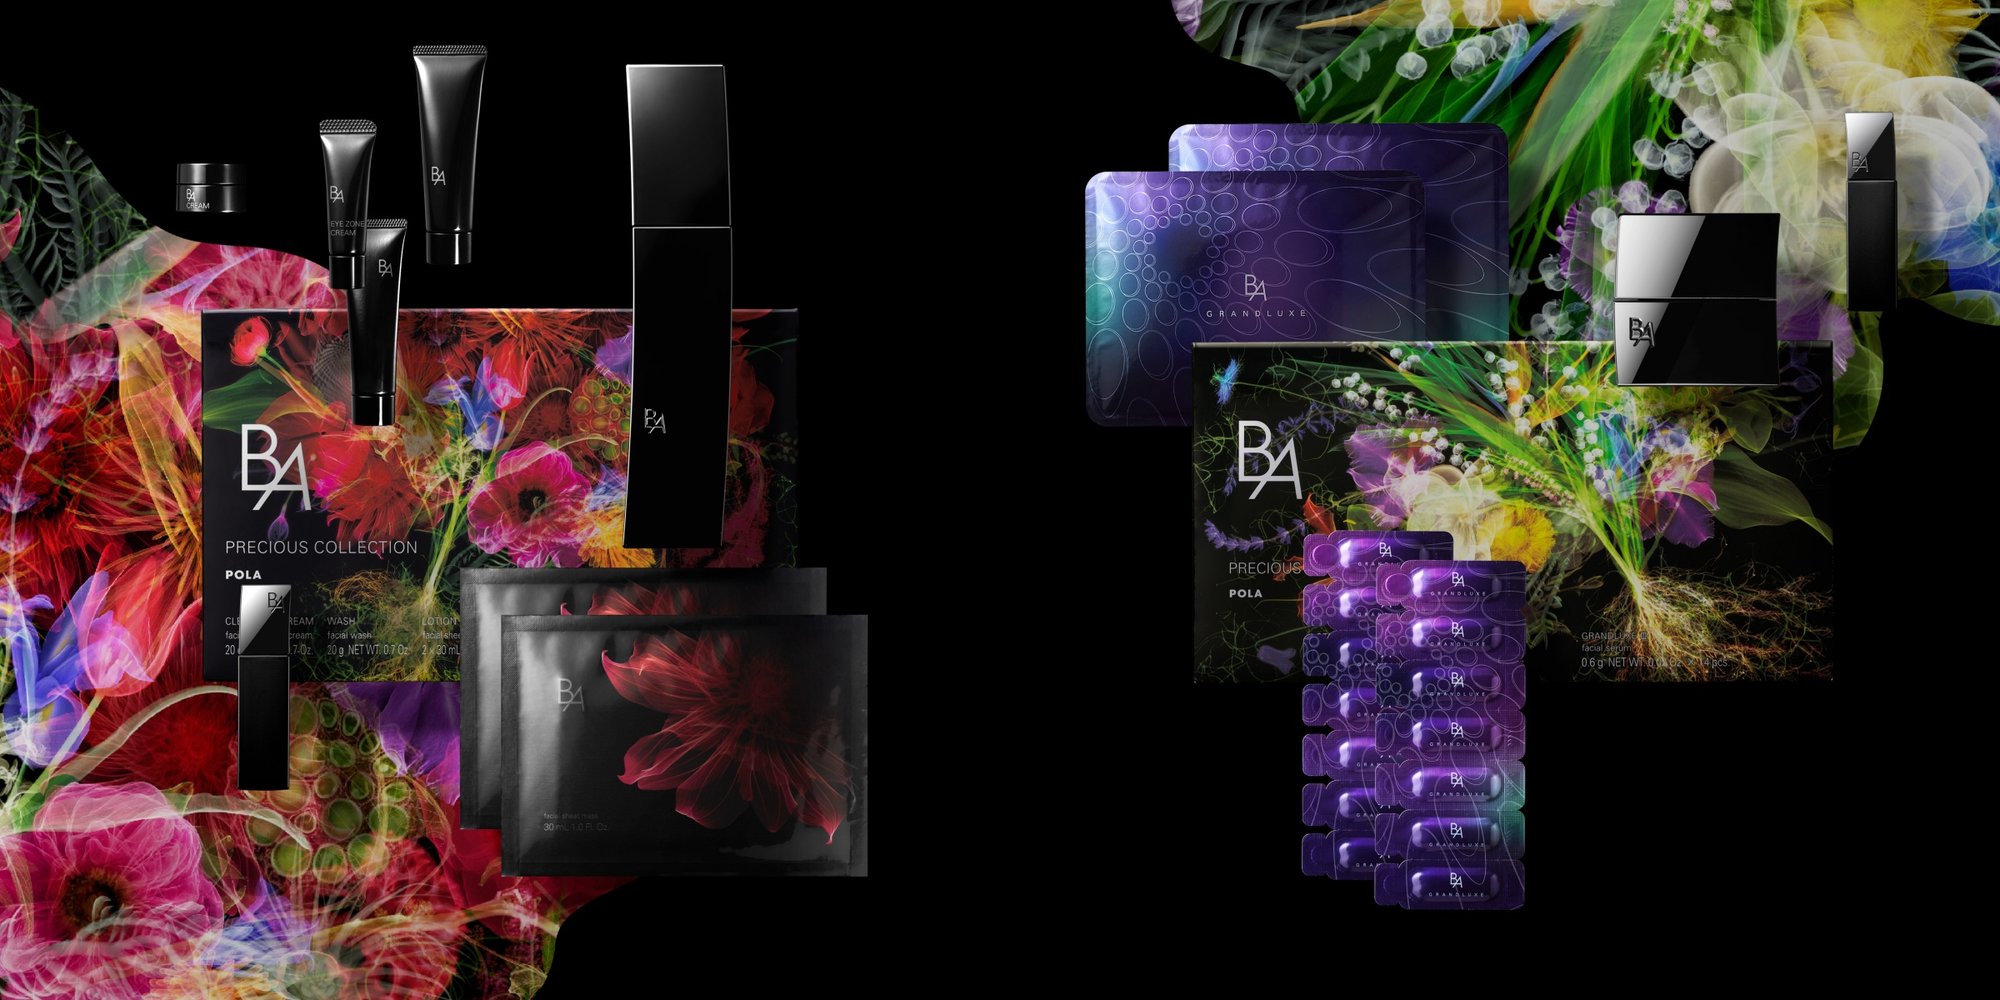 赤い花が描かれたボックスと黒い容器に入った化粧品、白や紫の花が描かれたボックスと、紫や黒のパッケージに入った化粧品